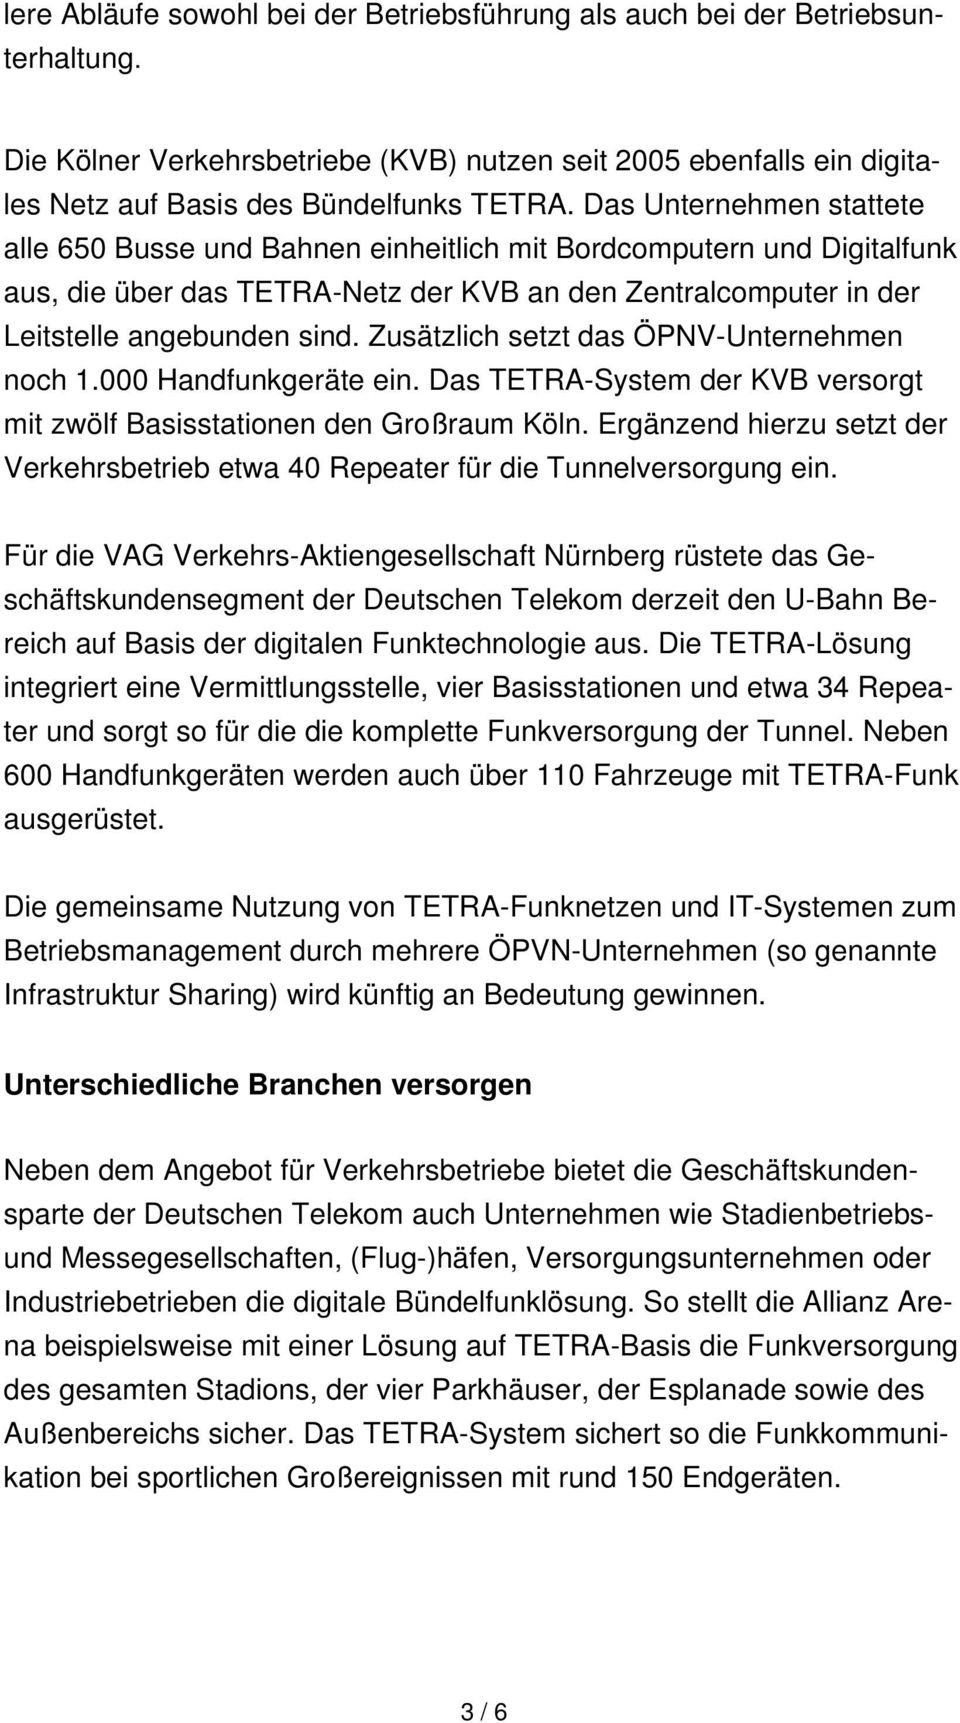 Zusätzlich setzt das ÖPNV-Unternehmen noch 1.000 Handfunkgeräte ein. Das TETRA-System der KVB versorgt mit zwölf Basisstationen den Großraum Köln.